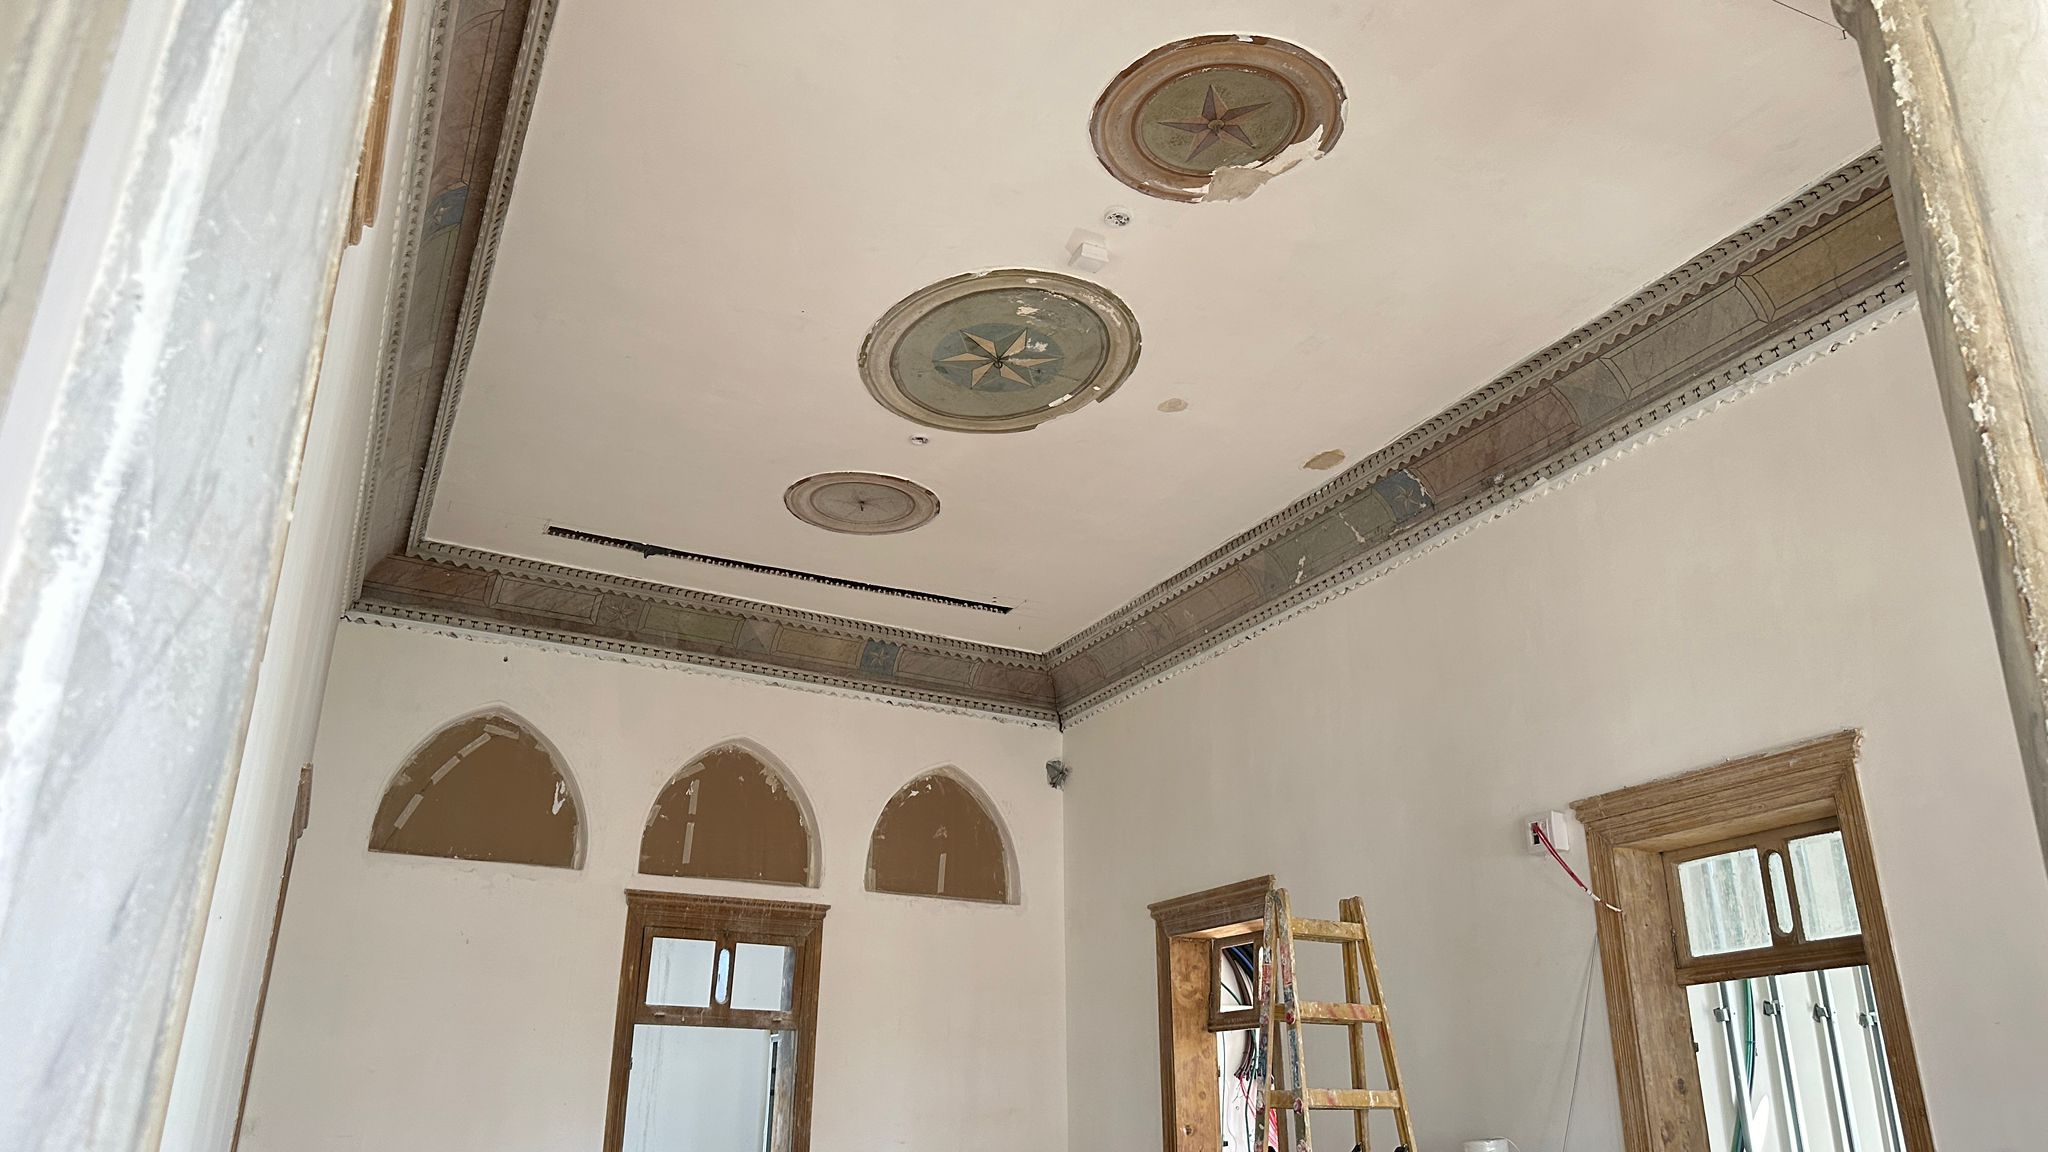 بيت حسن بركات التاريخي يحتفظ بأسمه تحت مظلة  مركز بركات الثقافي لتعزيز الهوية والثقافة في يافا